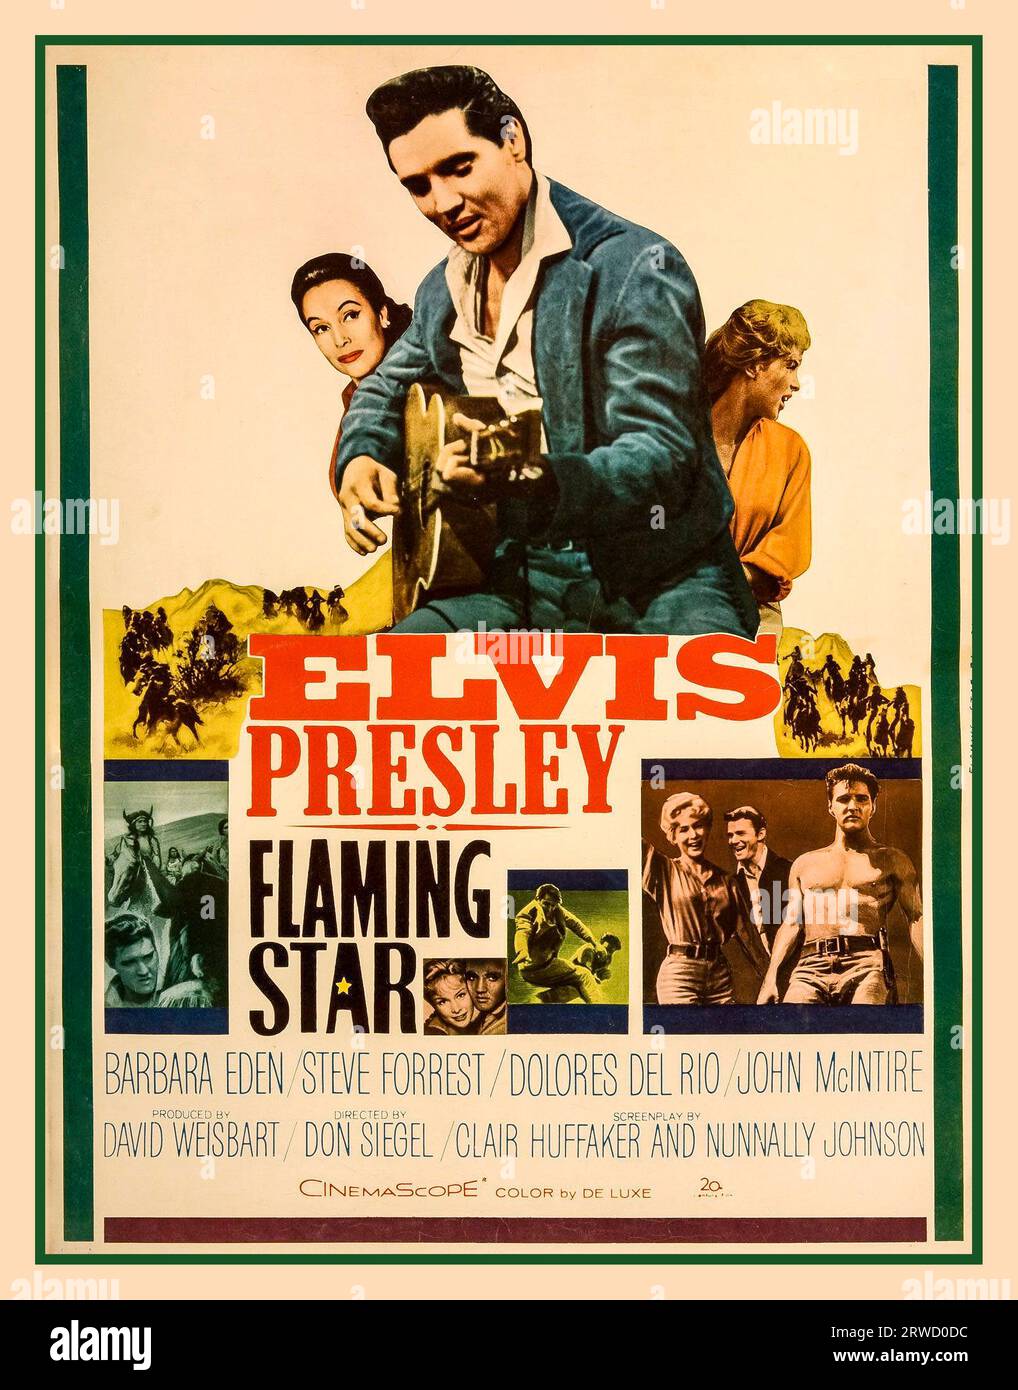 Flaming Star vintage film poster è un film WESTERN statunitense del 1960 con Elvis Presley, Barbara Eden e Steve Forrest, basato sul libro Flaming Lance (1958) di Clair Huffaker. I critici concordarono sul fatto che Presley diede una delle sue migliori interpretazioni come il sangue misto "Pacer Burton", un ruolo drammatico. Il film è stato diretto da Don Siegel e aveva il titolo provvisorio di Black Star. Il film ha raggiunto il numero 12 nelle classifiche al botteghino. È stato girato in Utah e Los Angeles, Foto Stock